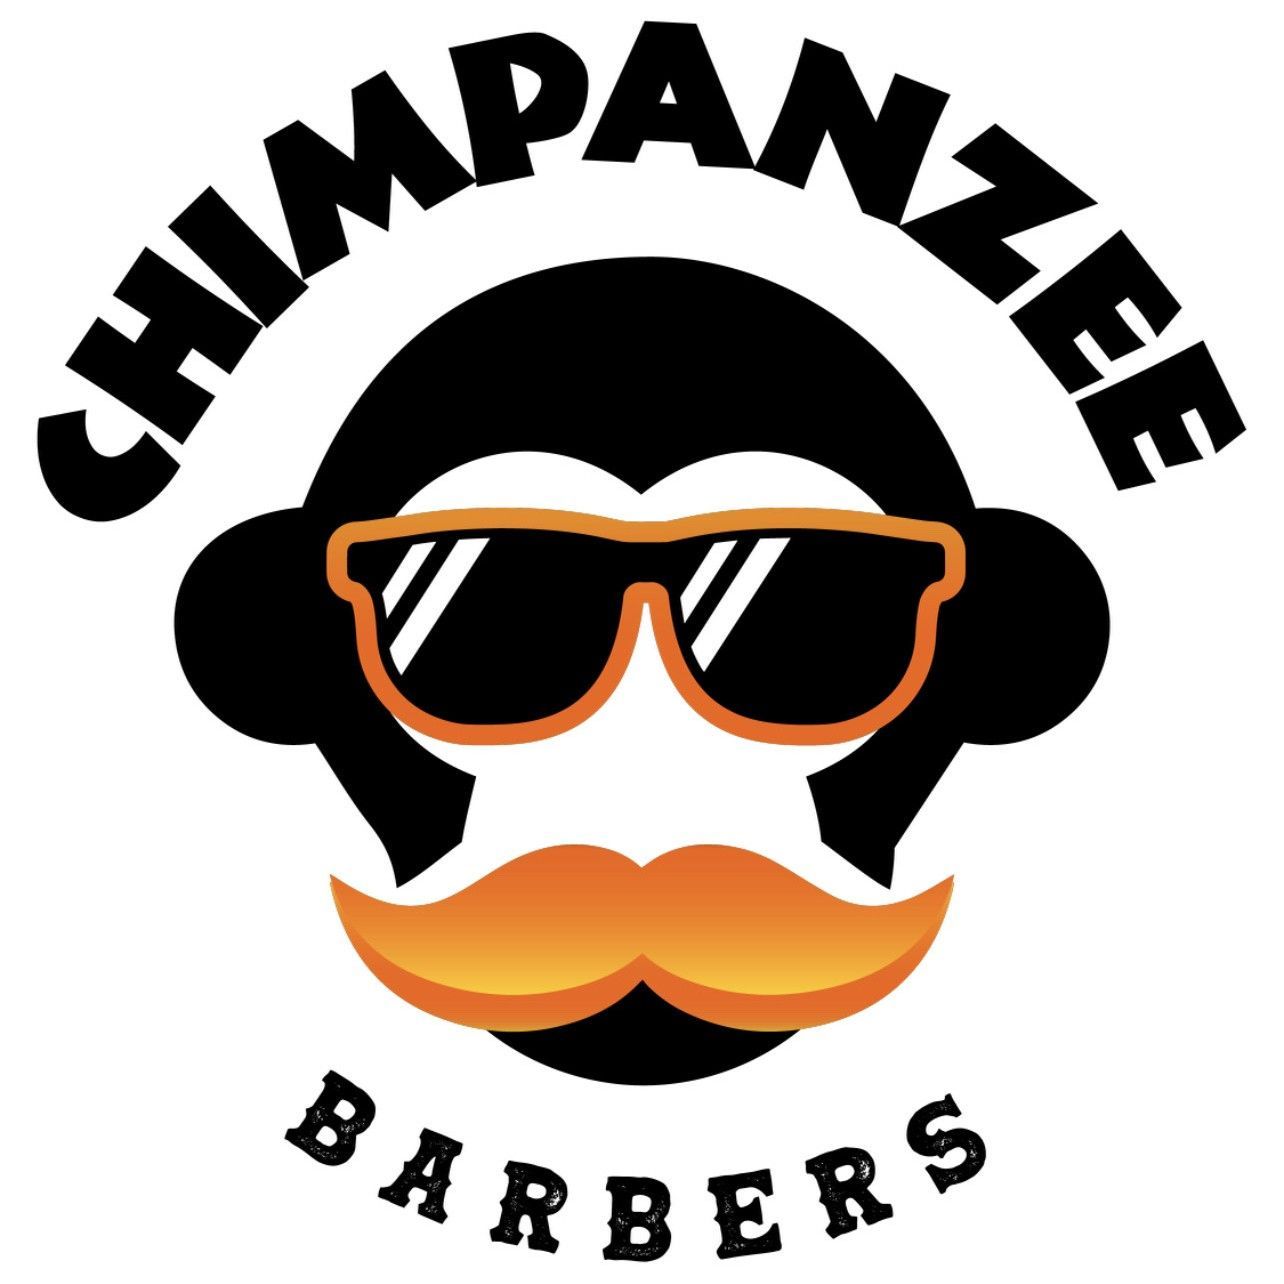 Chimpanzee Barbers - Ashleaf -, 12 Cromwellsfort Road, Dublin